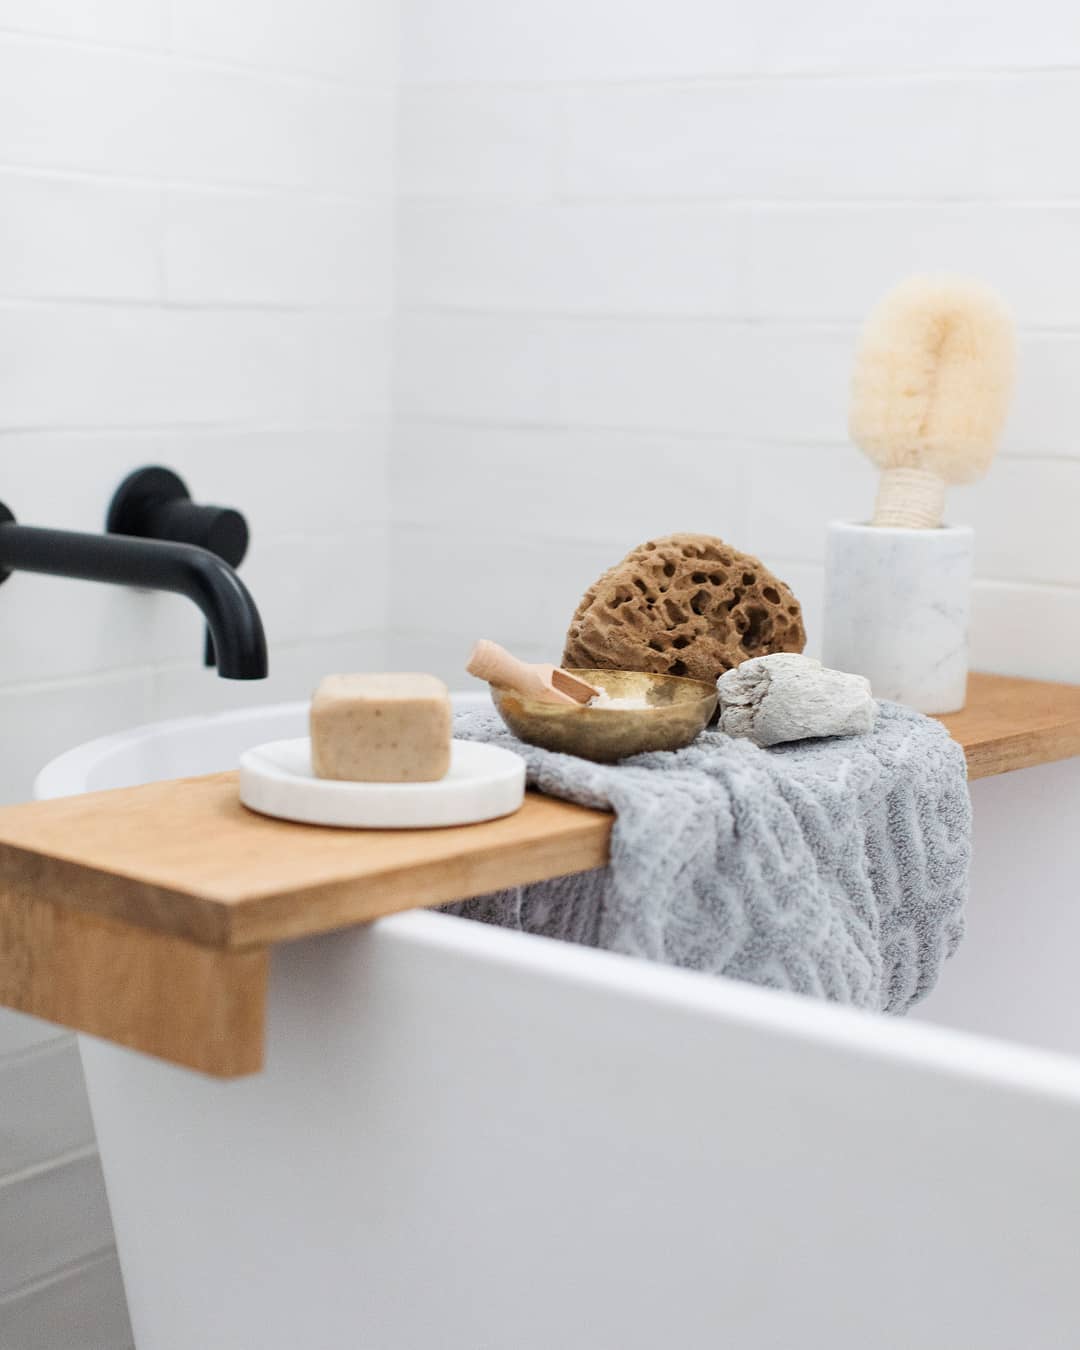 Bathtub shelf with loofas and sponges. Photo by Instagram user @stylecuratorau